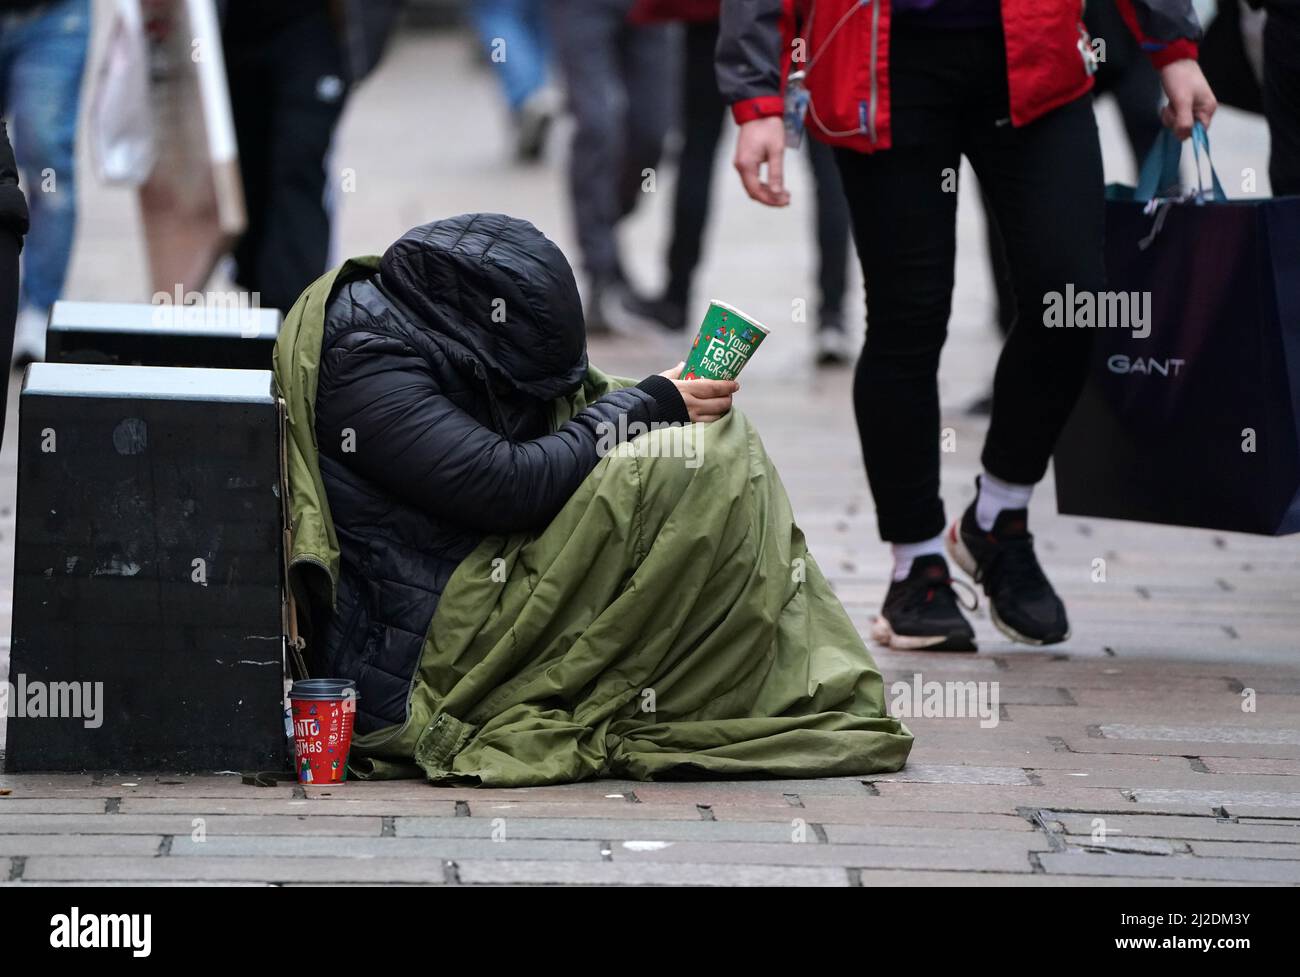 Datei-Foto vom 24/12/21 von einem Obdachlosen in der Buchanan Street in Glasgow, zwei Ballungsgebiete im Vereinigten Königreich Glasgow und Manchester, haben erhebliche Fortschritte bei der Bekämpfung der Obdachlosigkeit auf der Straße gemacht, aber es ist ein Schritt weg von einem „Einheitsansatz“ erforderlich, um das Problem global anzugehen, so ein neuer Bericht. Stockfoto